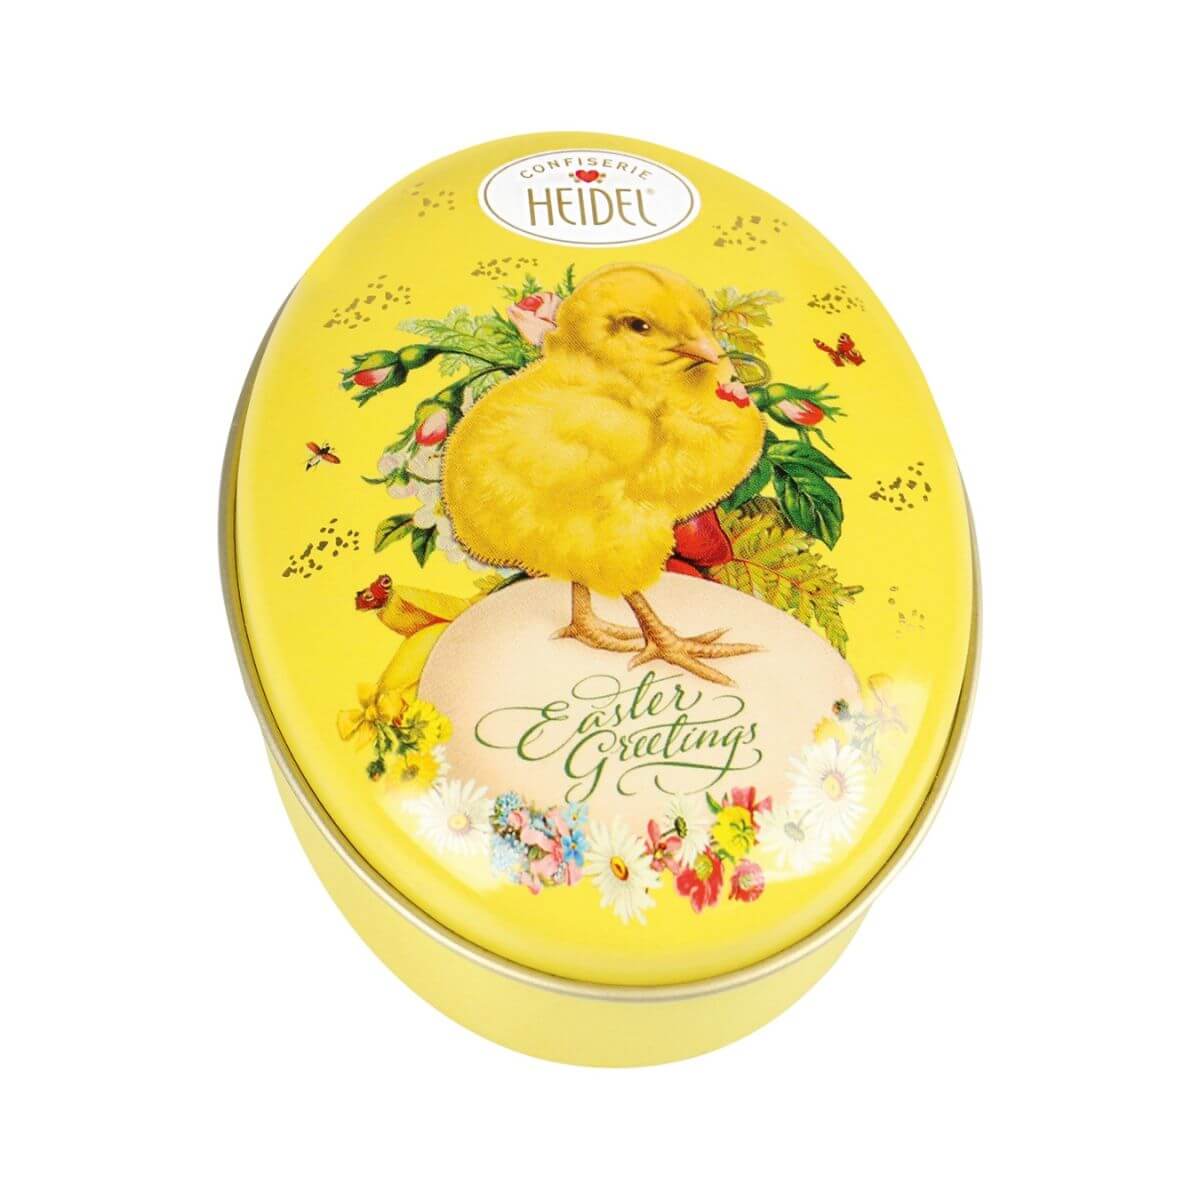 Heidel Easter Nostalgia Praline Chocolates Chick Tin